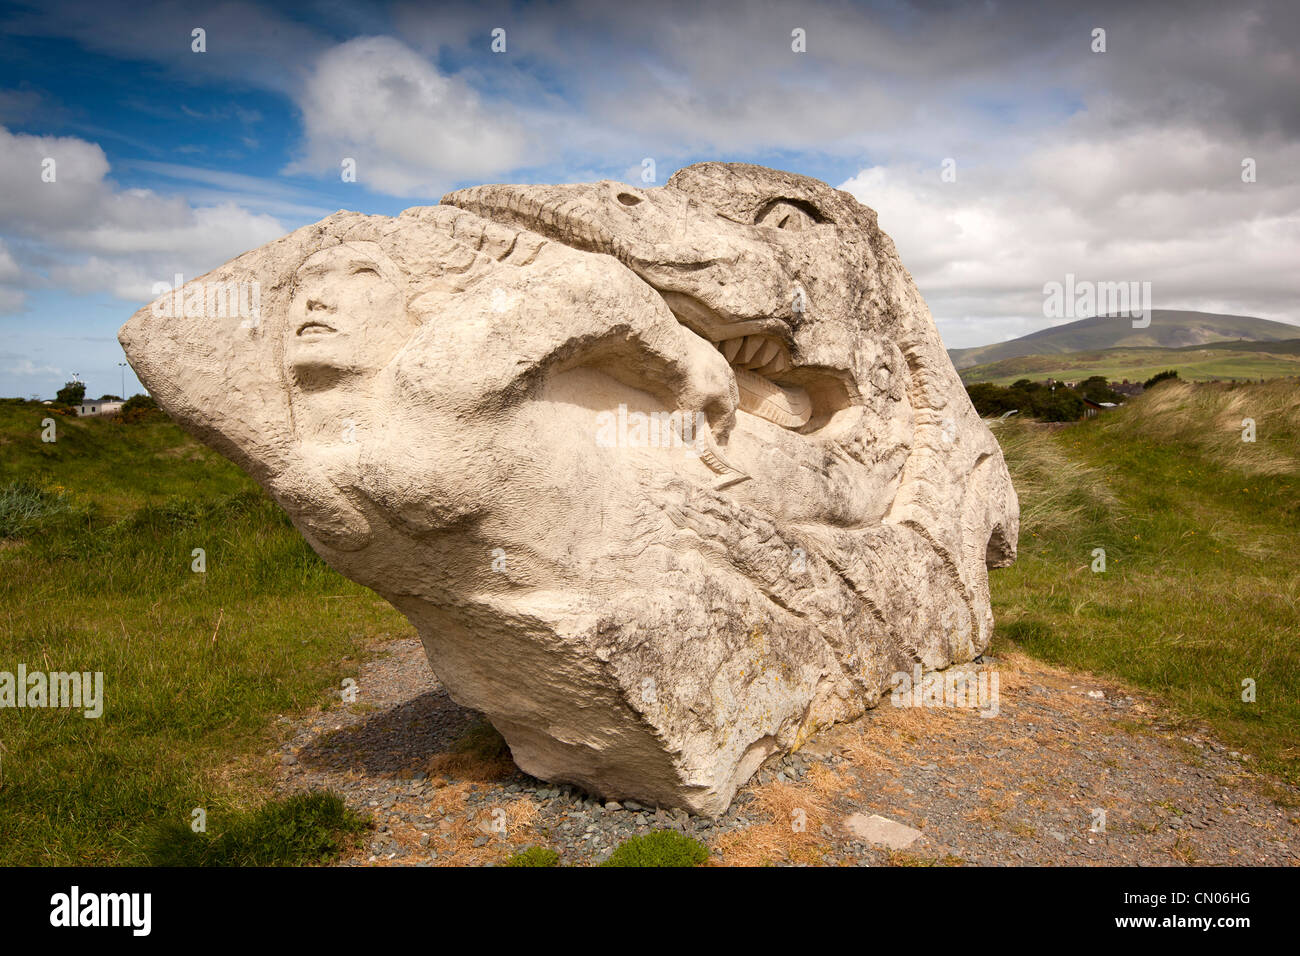 UK, Cumbria, Haverigg, échapper à la sculpture de lumière par le sculpteur Josefina de Vasconcellos à côté de dunes de sable Banque D'Images